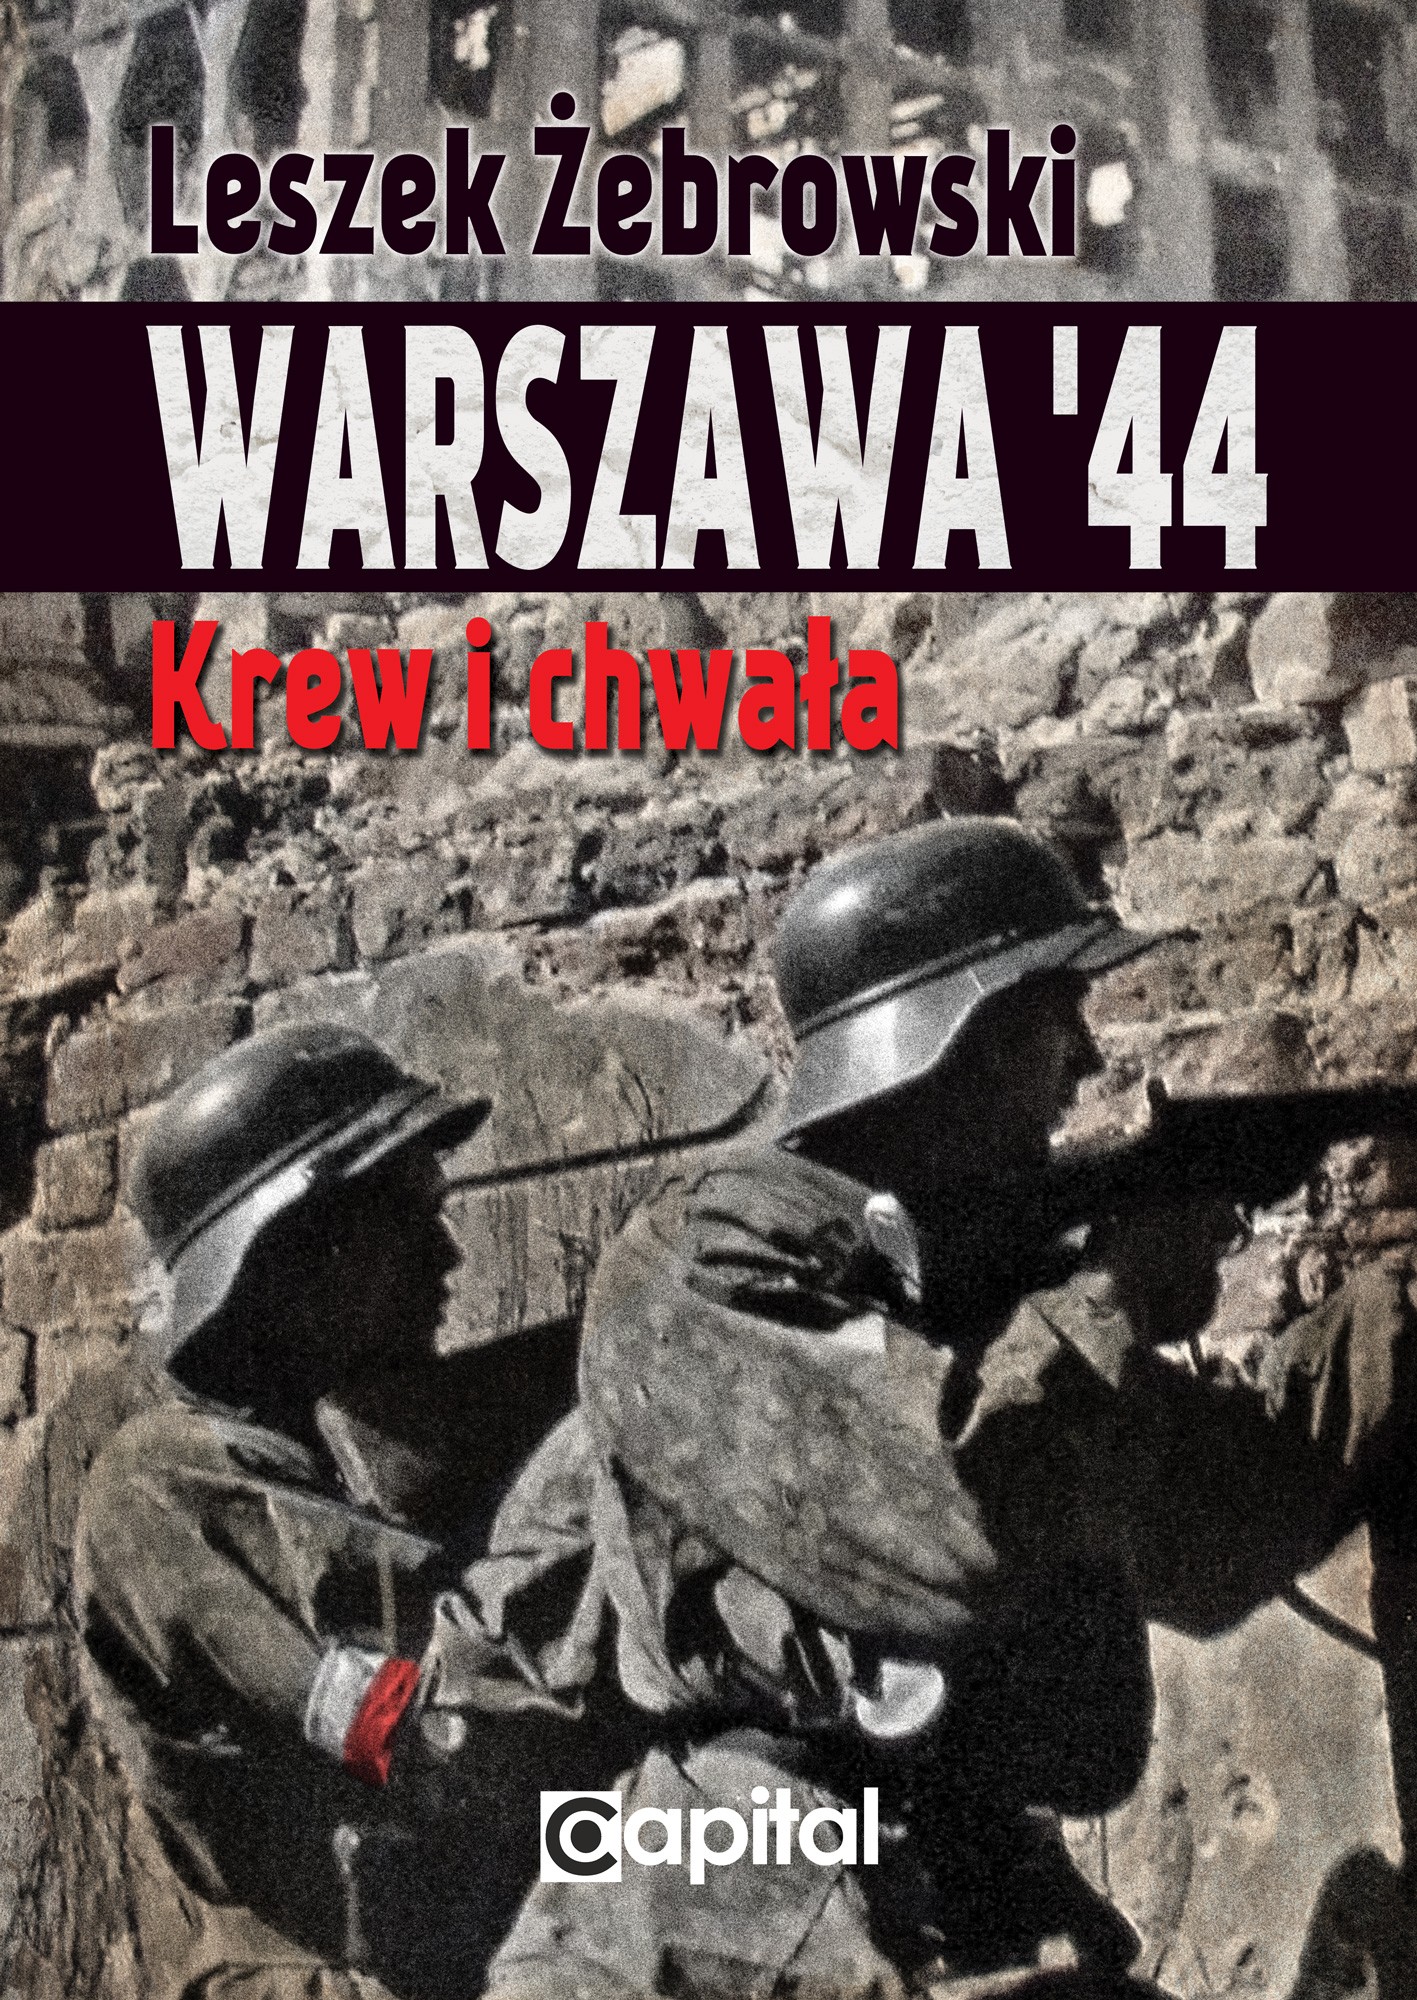 Warszawa 44 Krew i chwała (L.Żebrowski)